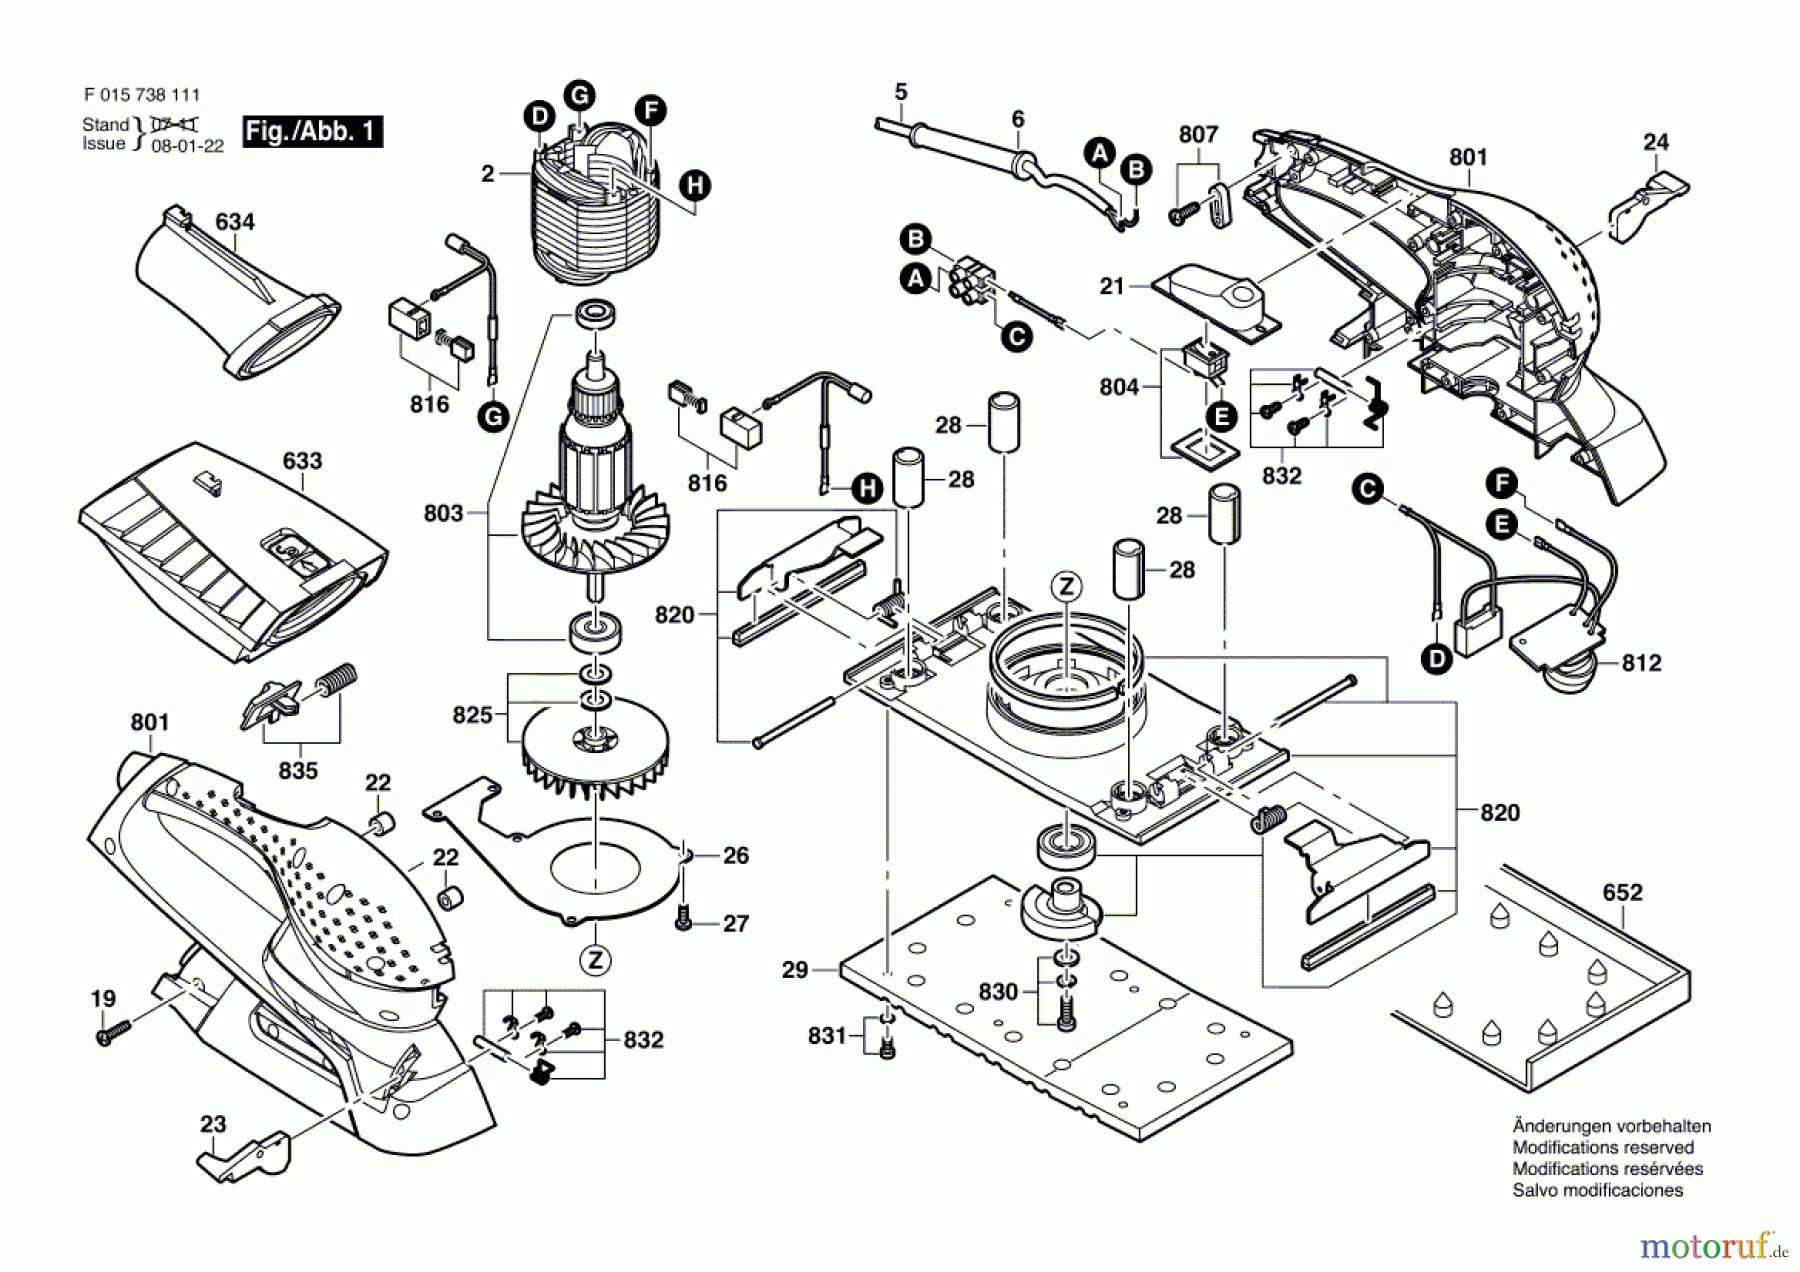  Bosch Werkzeug Schwingschleifer 7381 Seite 1